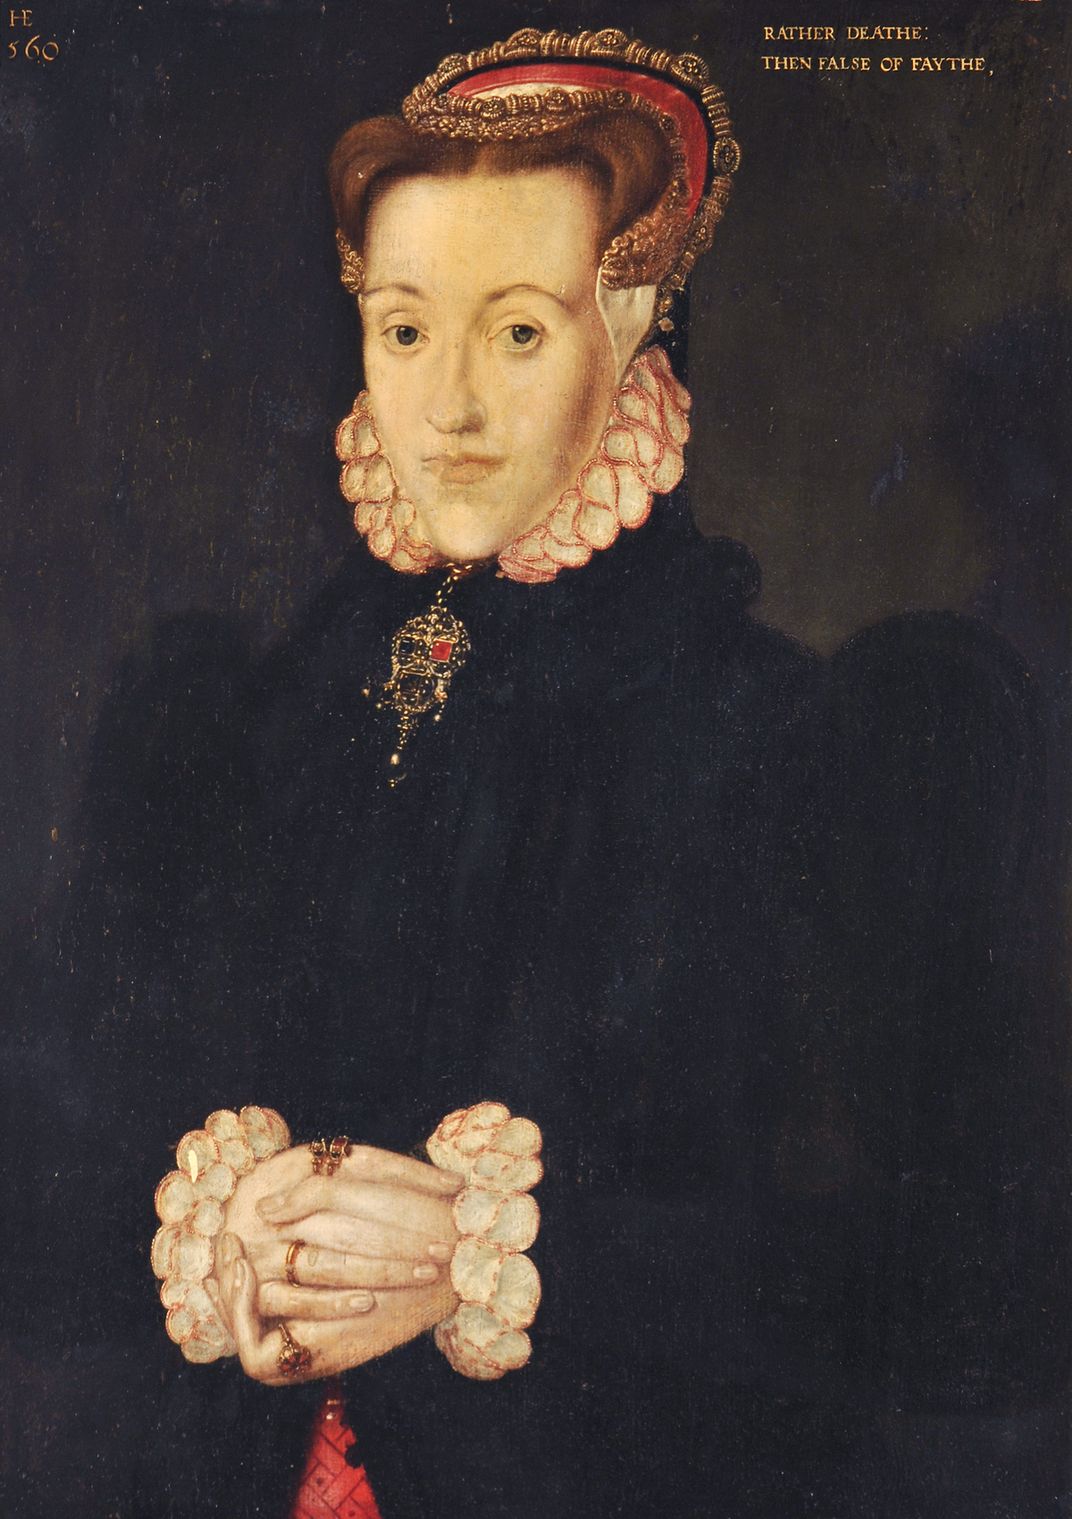 A posthumous portrait of Anne Askew by Hans Eworth